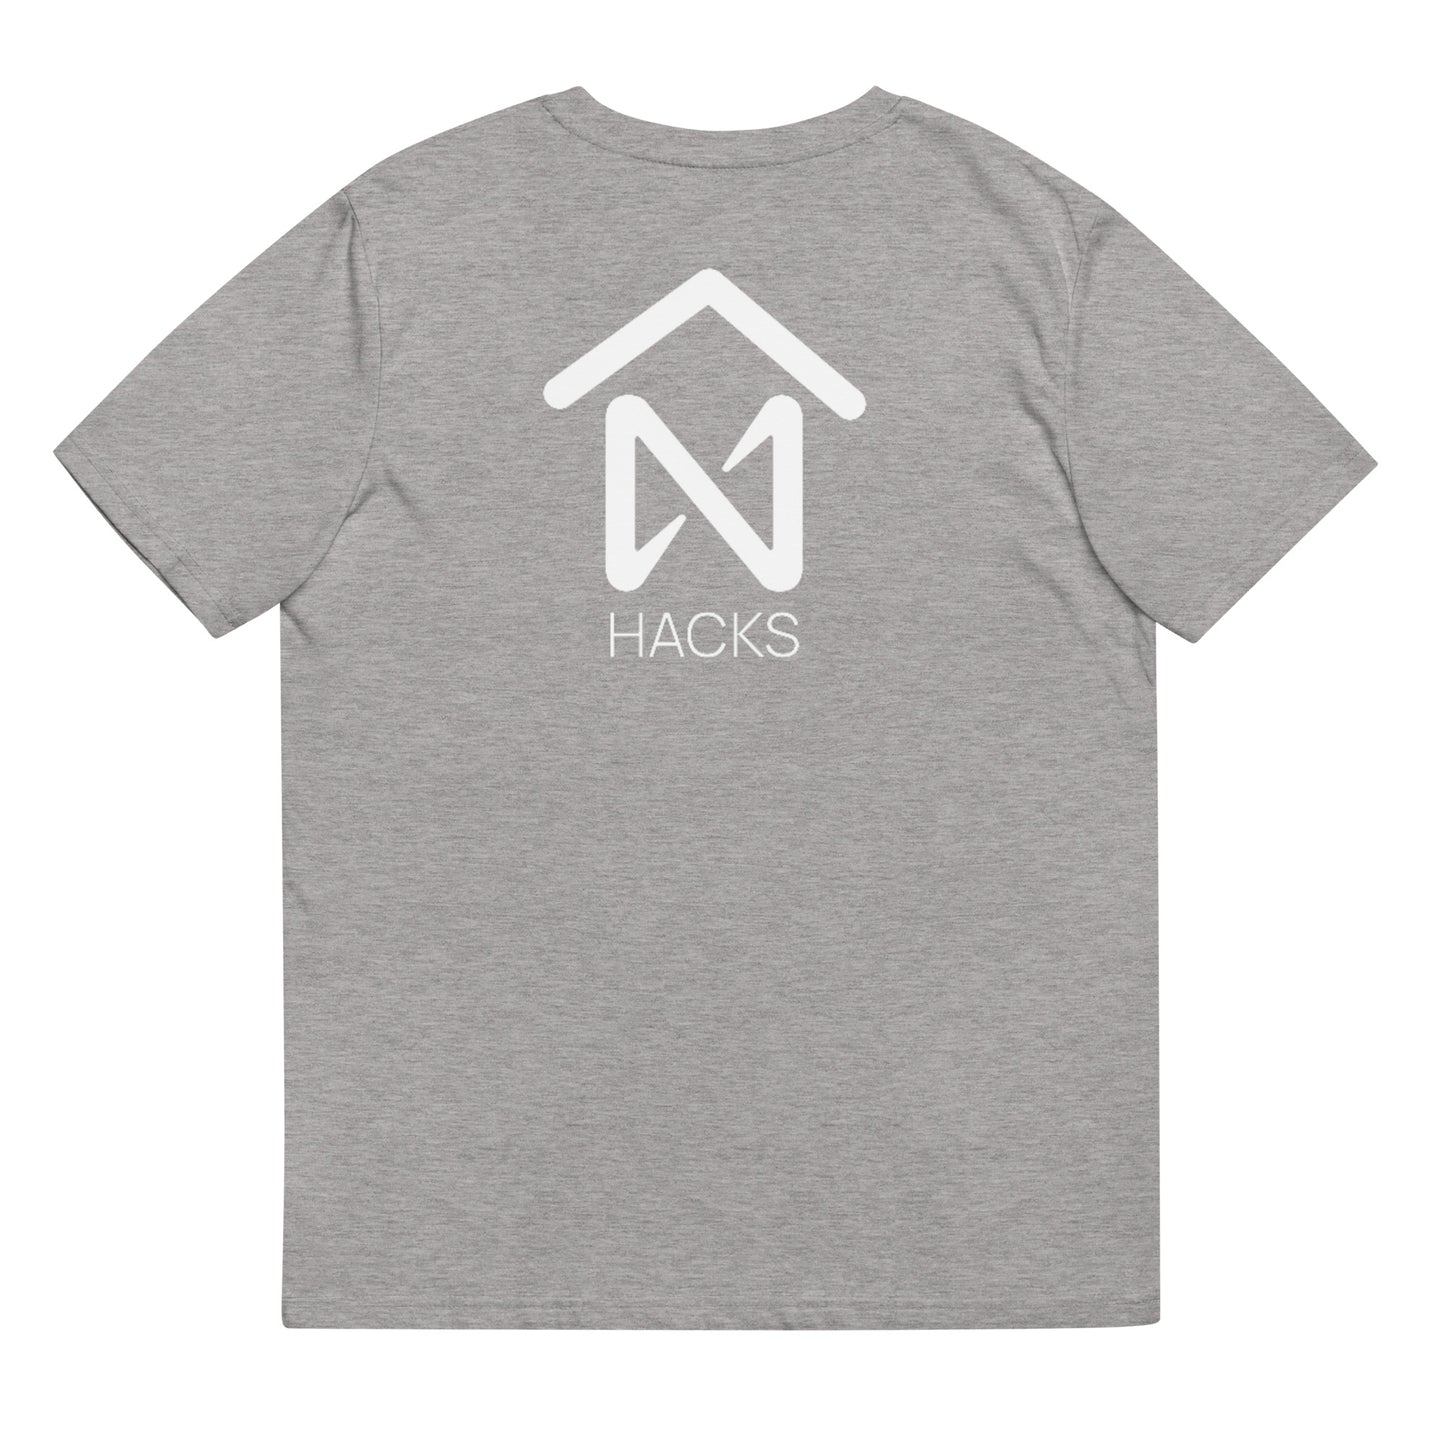 Banyan Collective x NEAR Hacks T-shirt—White Logo